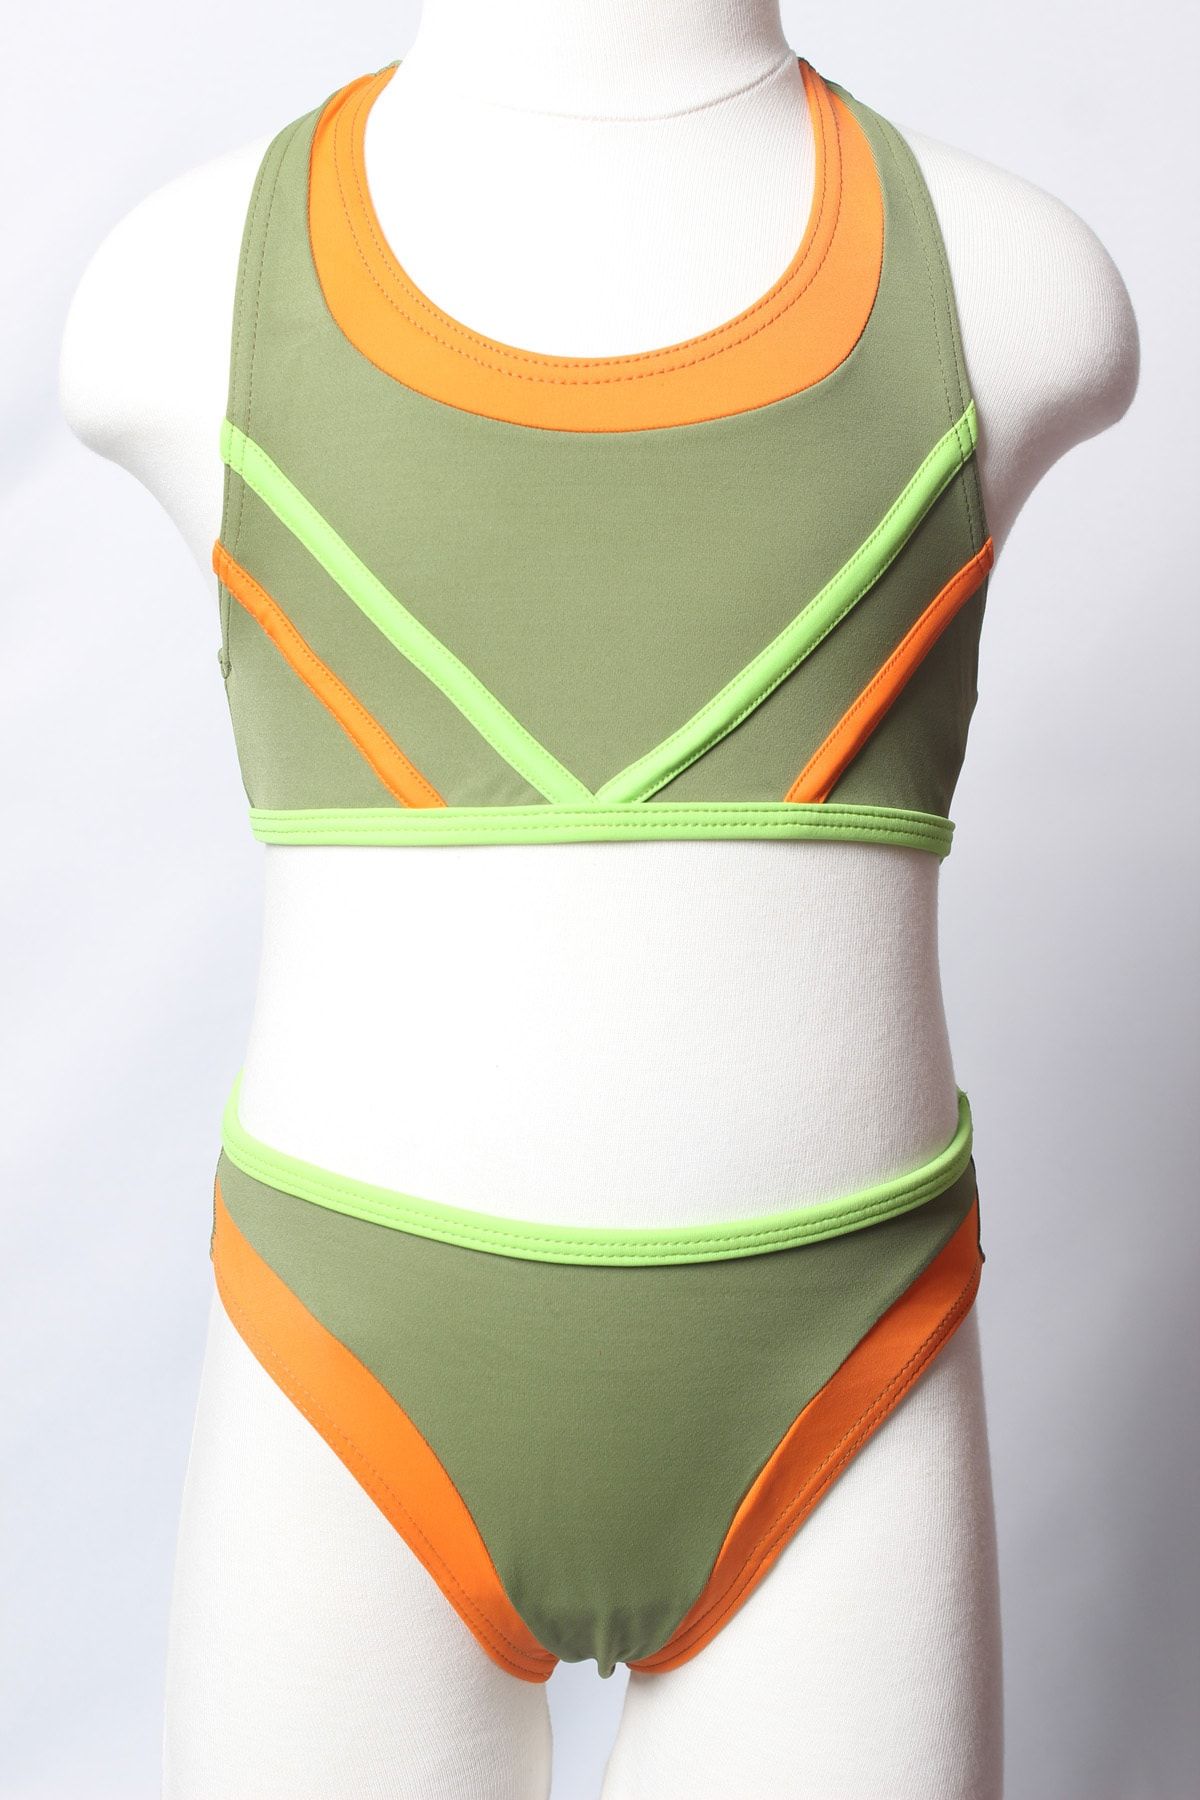 Sude Ayl Kız Çocuk Haki Yüzücü Bustiyer Model Biyeli Alt Üst Düz Bikini Takım 192